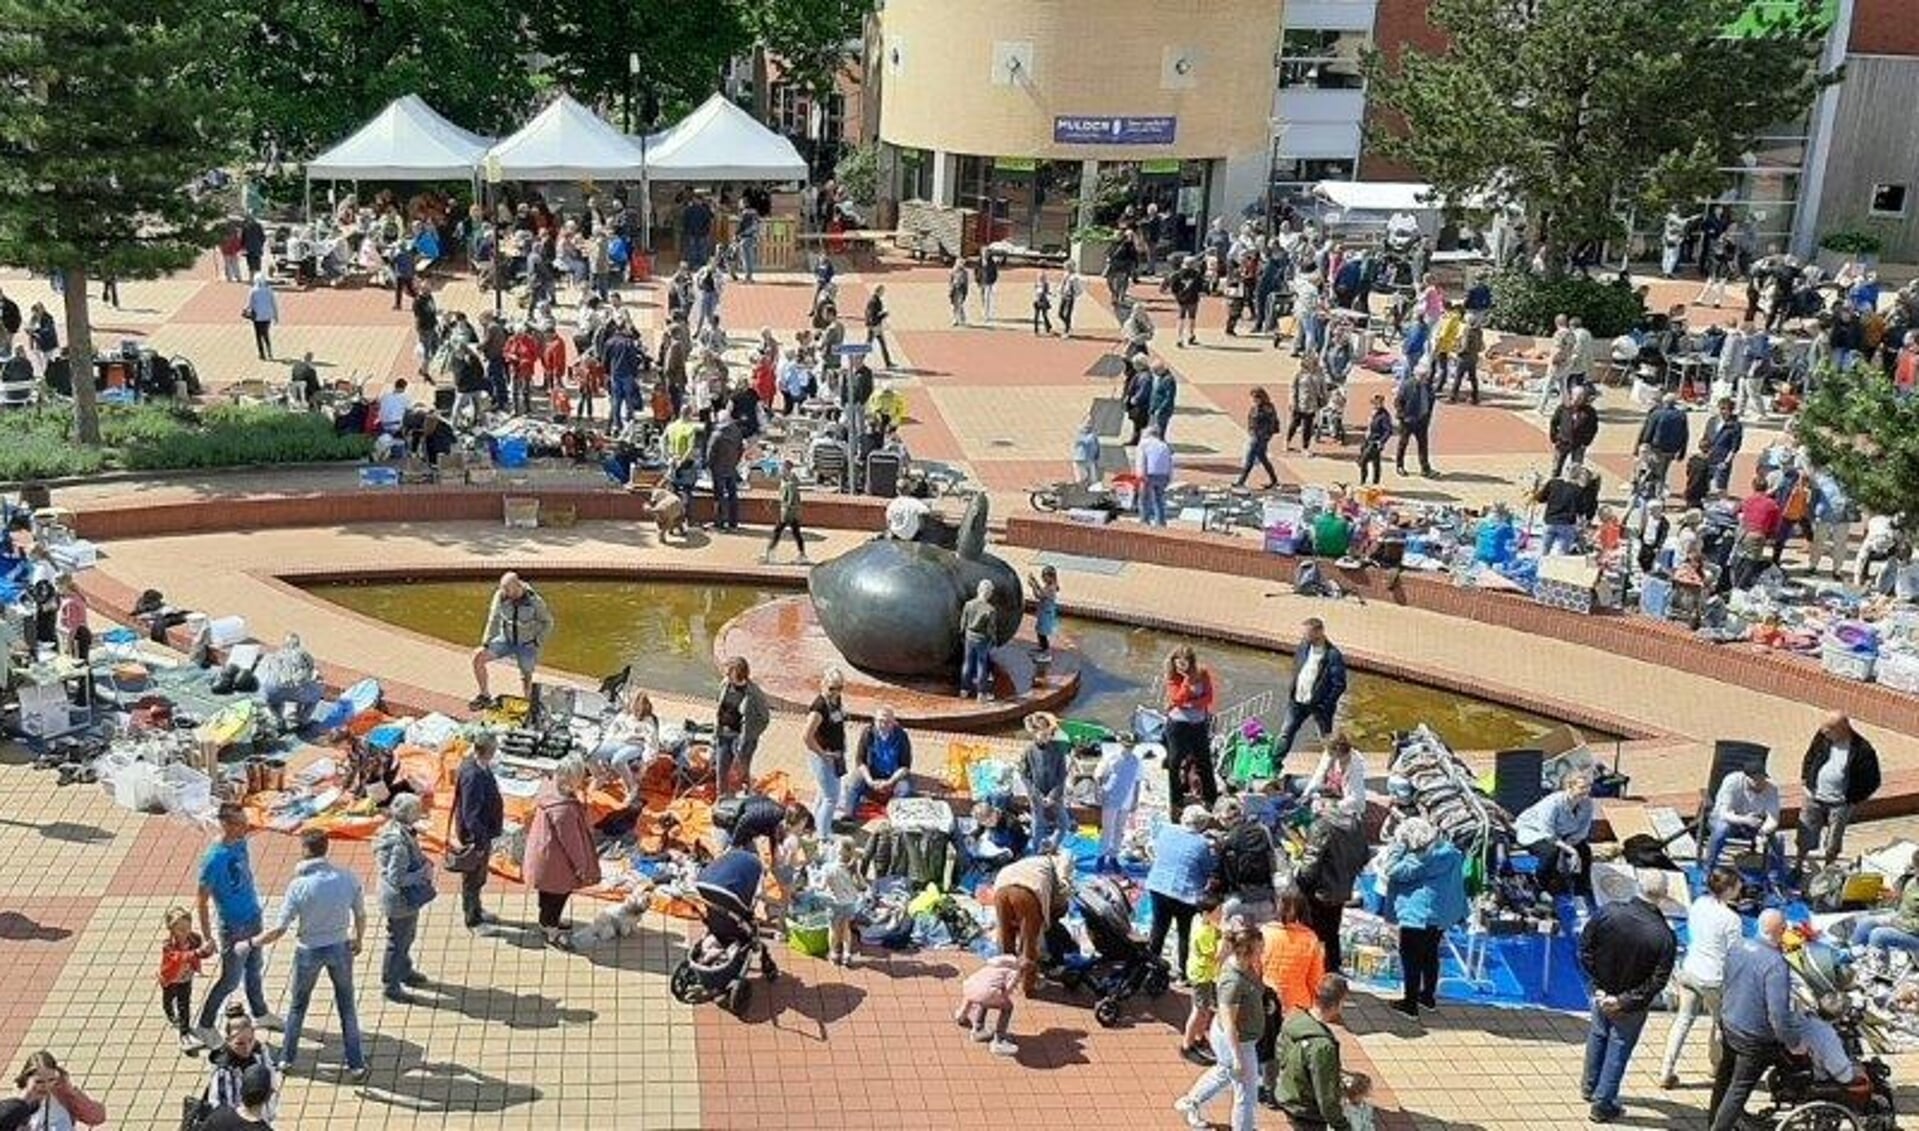 Gezellige drukte in de Kruidenwijk tijdens de Pinkstermarkt, een van de activiteiten die de wijkvereniging organiseert.